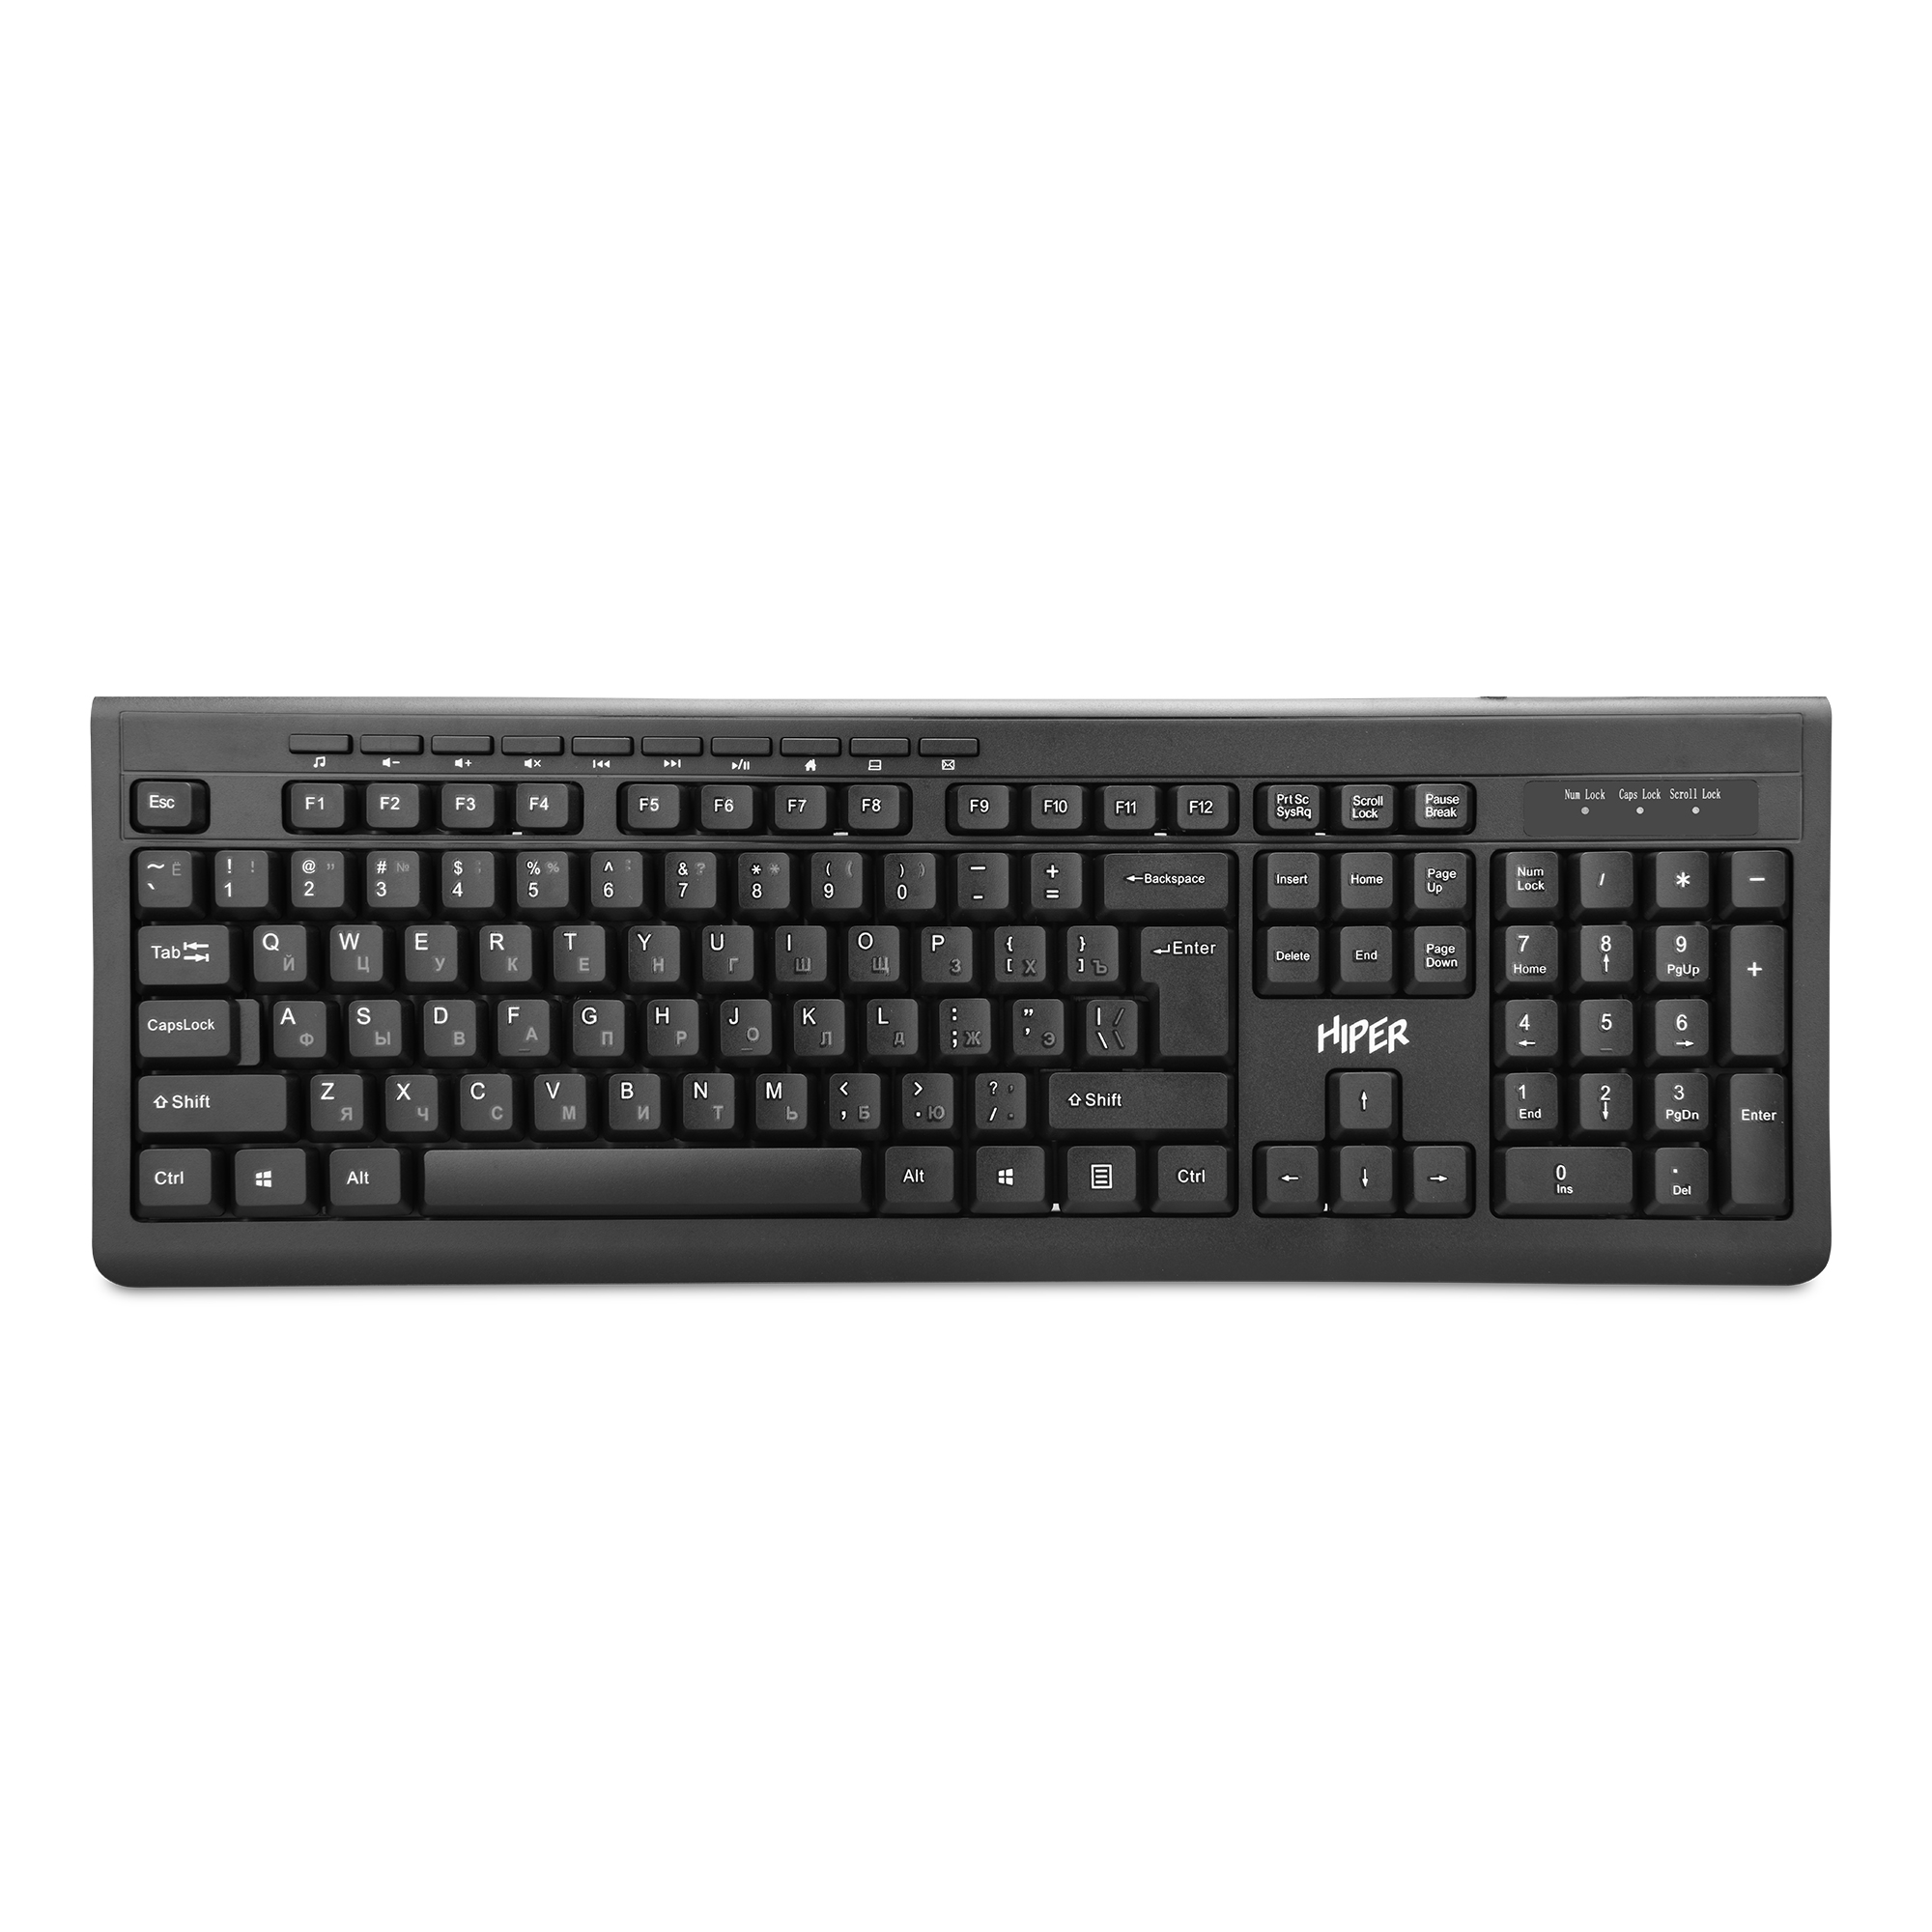 Проводная клавиатура HIPER OK-2000, 114 кнопок, 1,5м кабель, цвет черный, USB